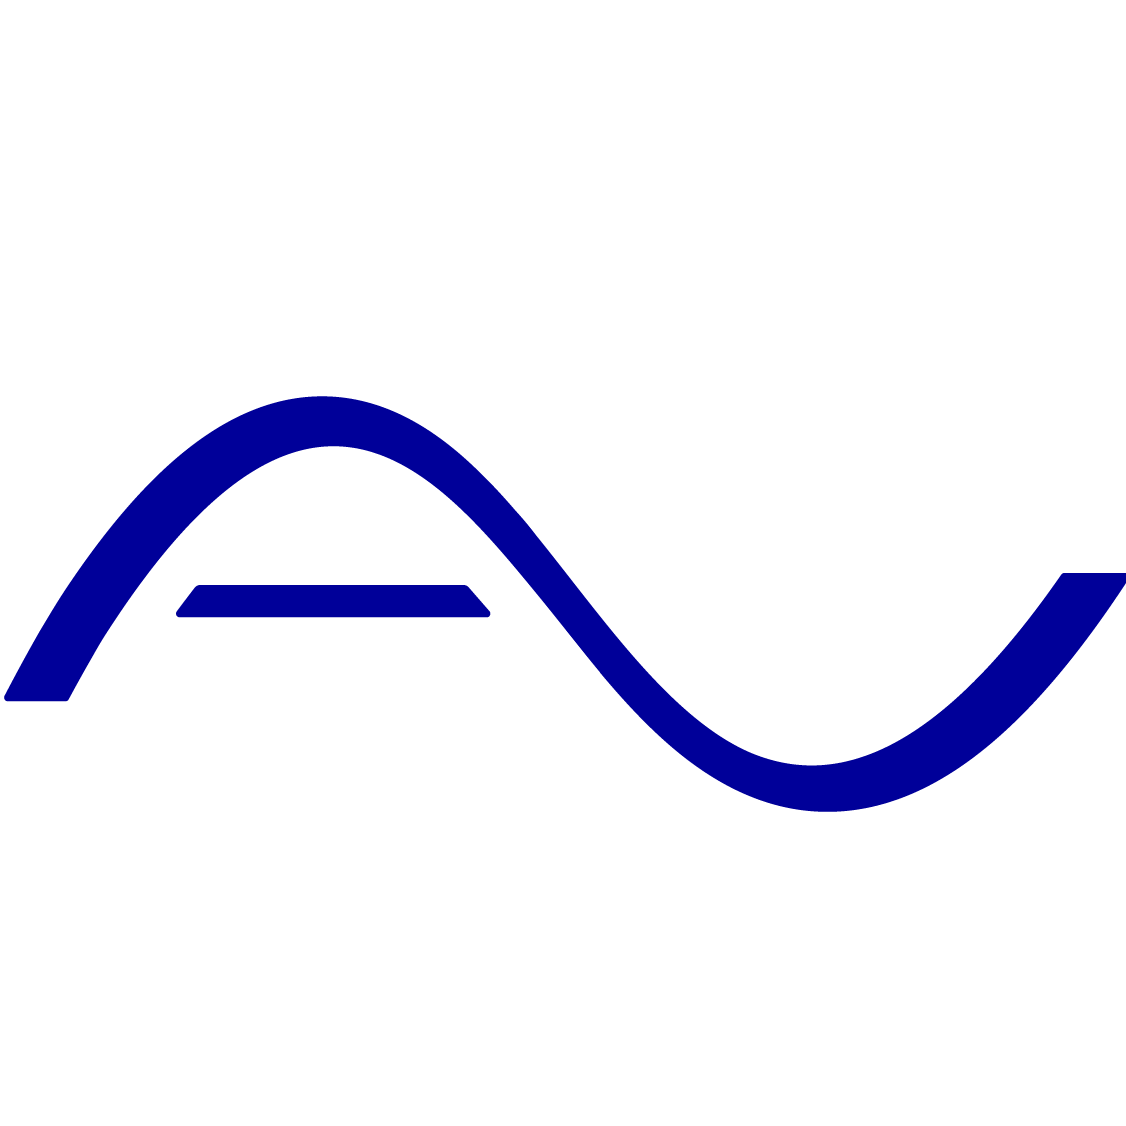 AUGURY_logo_symbol-01